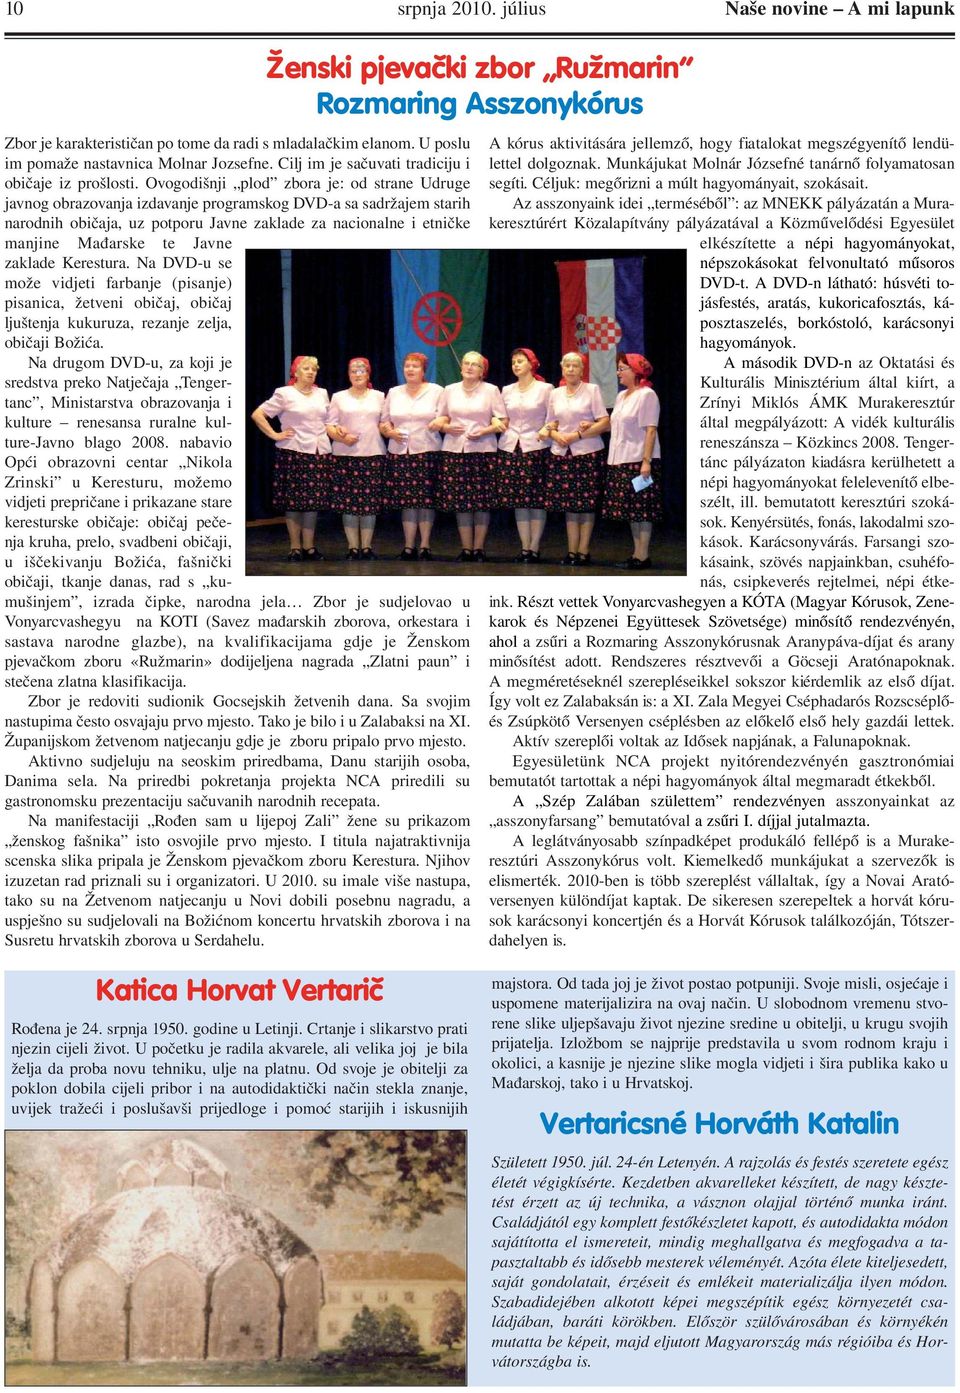 Ovogodišnji plod zbora je: od strane Udruge javnog obrazovanja izdavanje programskog DVD-a sa sadržajem starih narodnih običaja, uz potporu Javne zaklade za nacionalne i etničke manjine Mađarske te